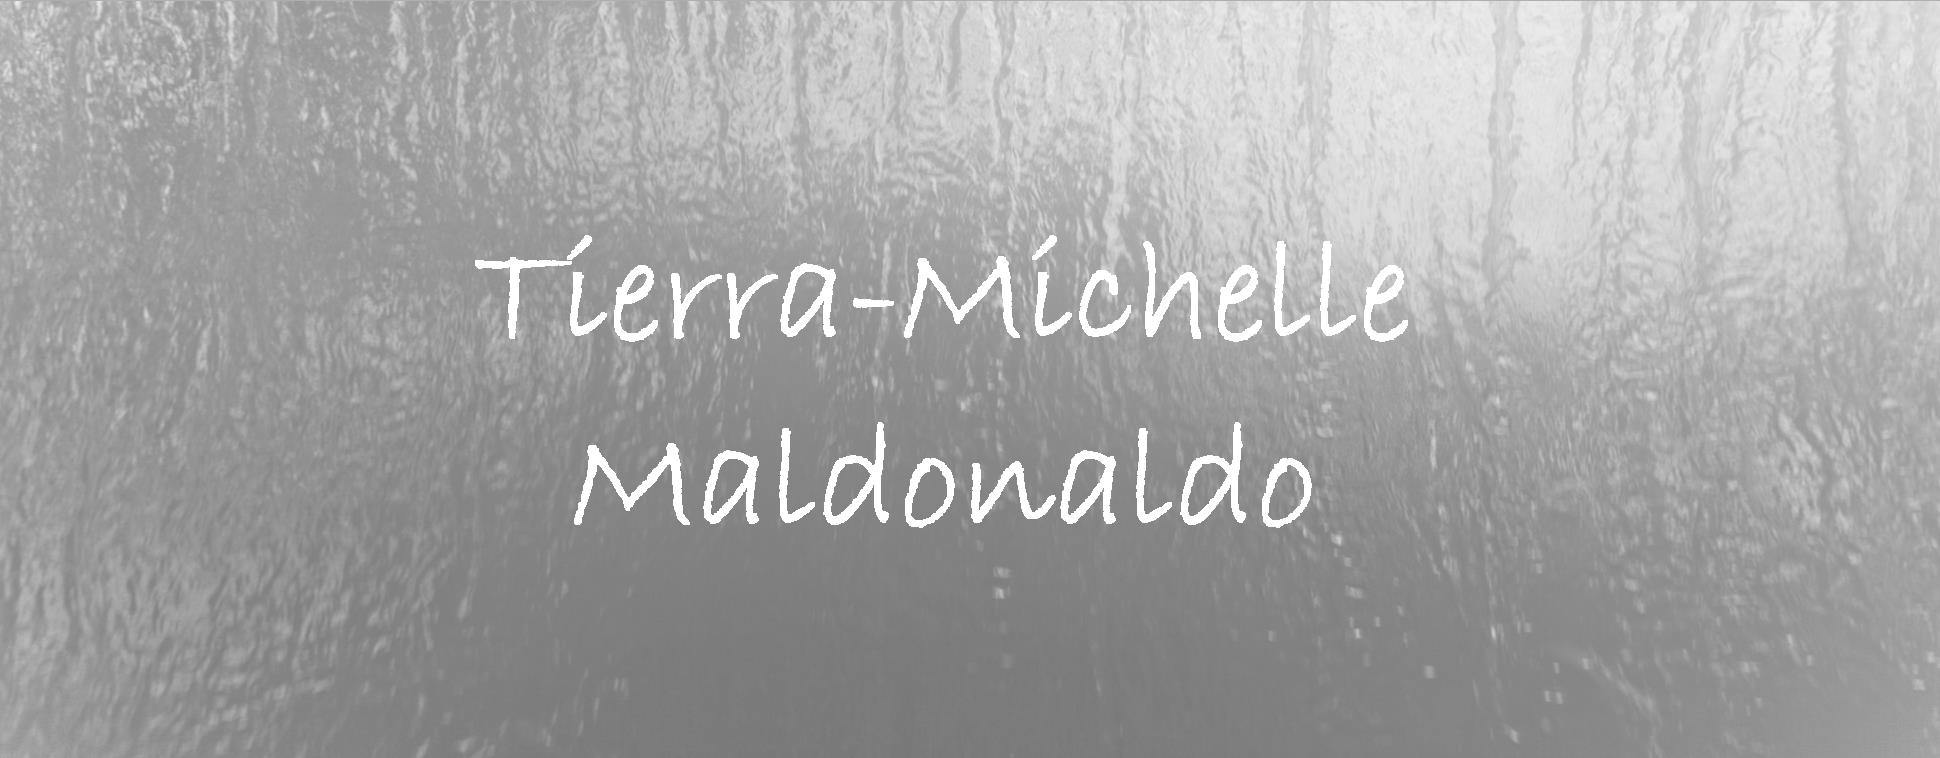 Tierra Michelle Maldonaldo.jpg